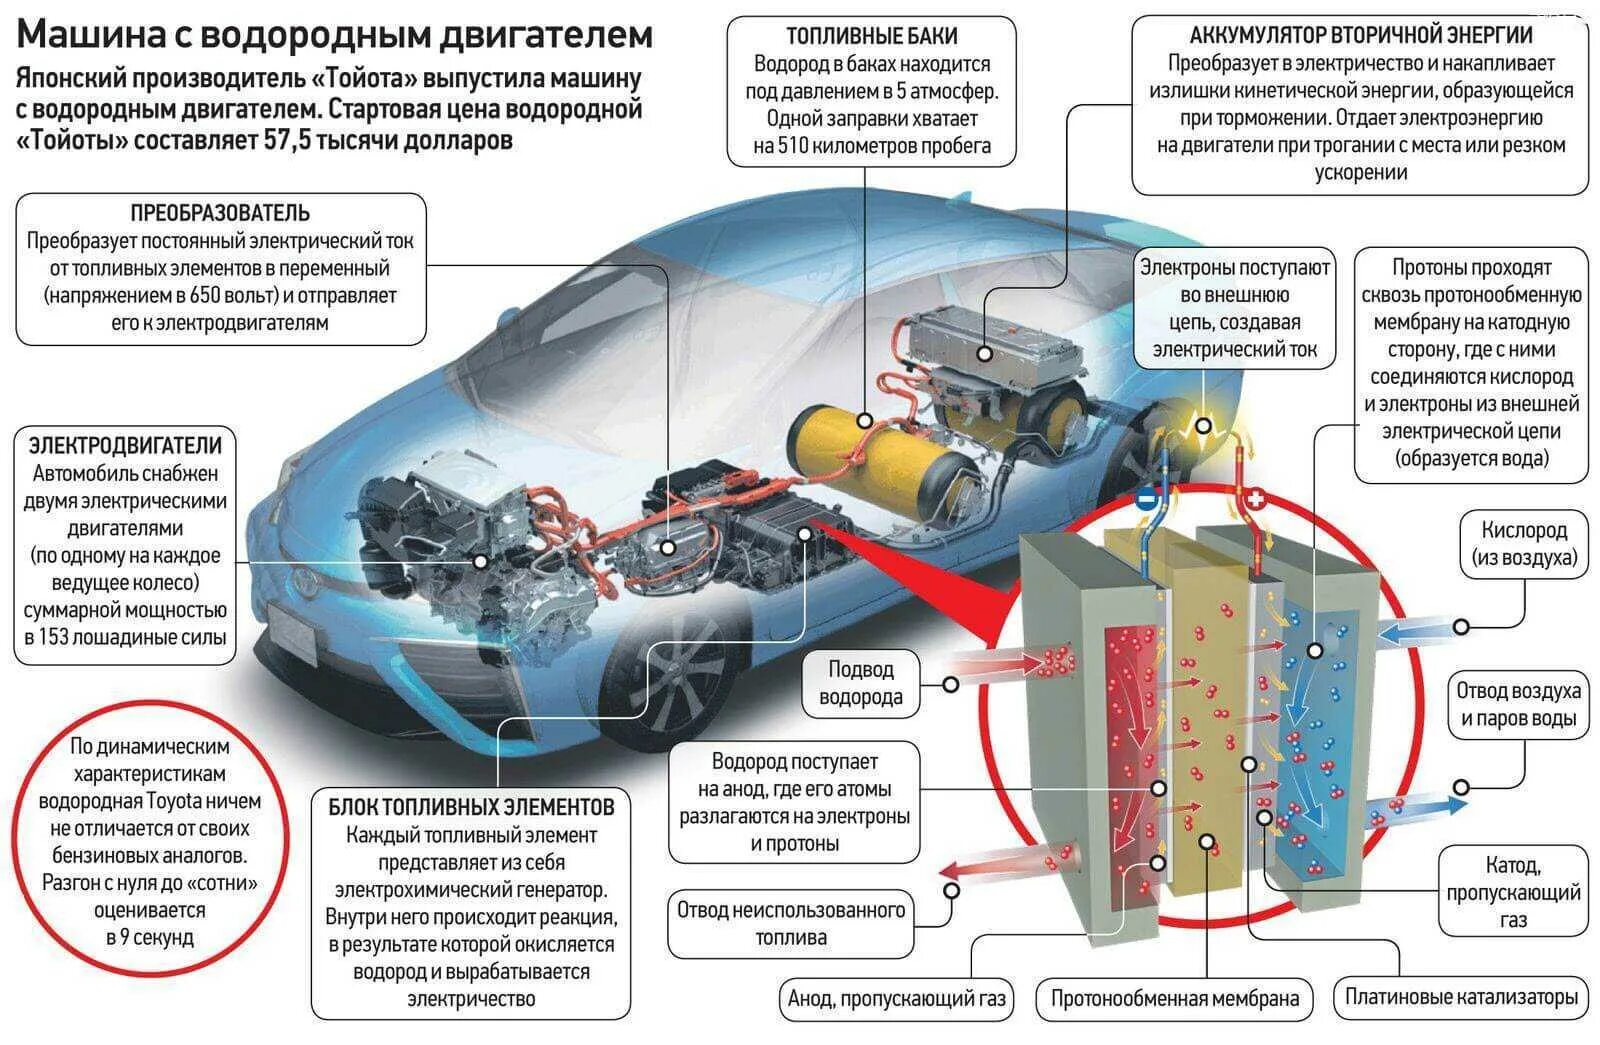 Принцип водородного двигателя. Схема автомобиля на водородном ДВС. Автомобиль на водородных топливных элементах. Схема автомобиля на водородных топливных элементах. Водородный двигатель схема устройства.